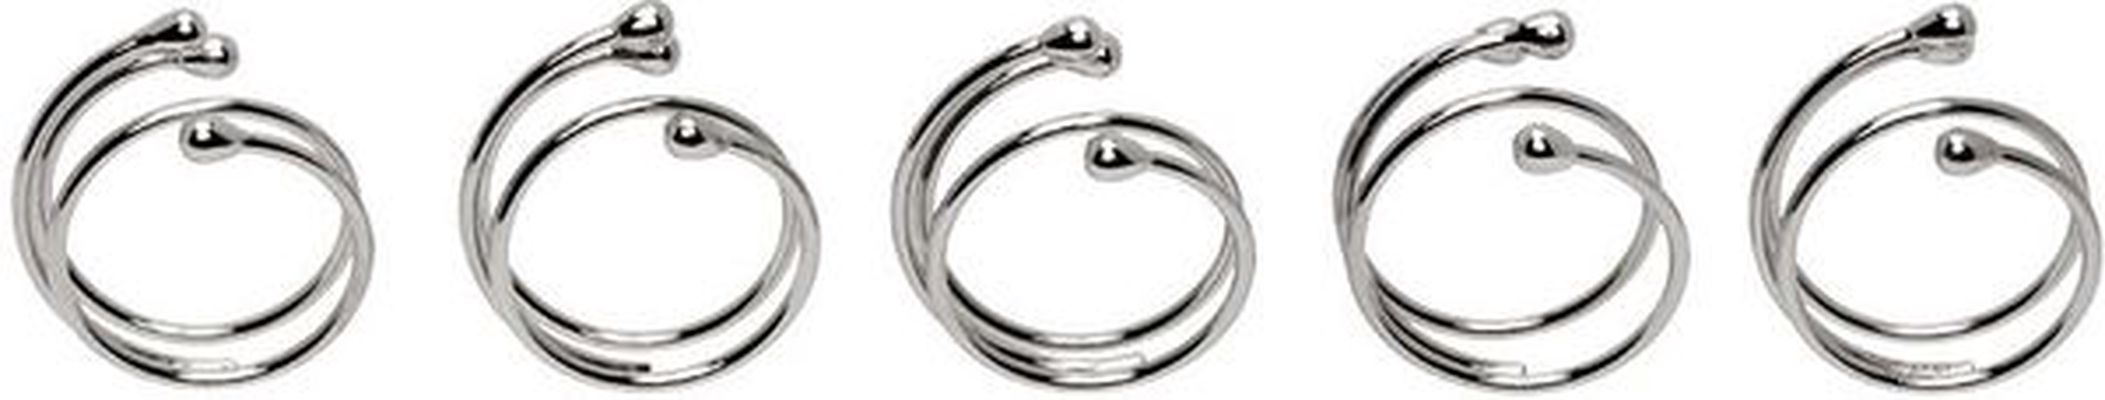 HUGO KREIT Silver Spring 5 Ring Set